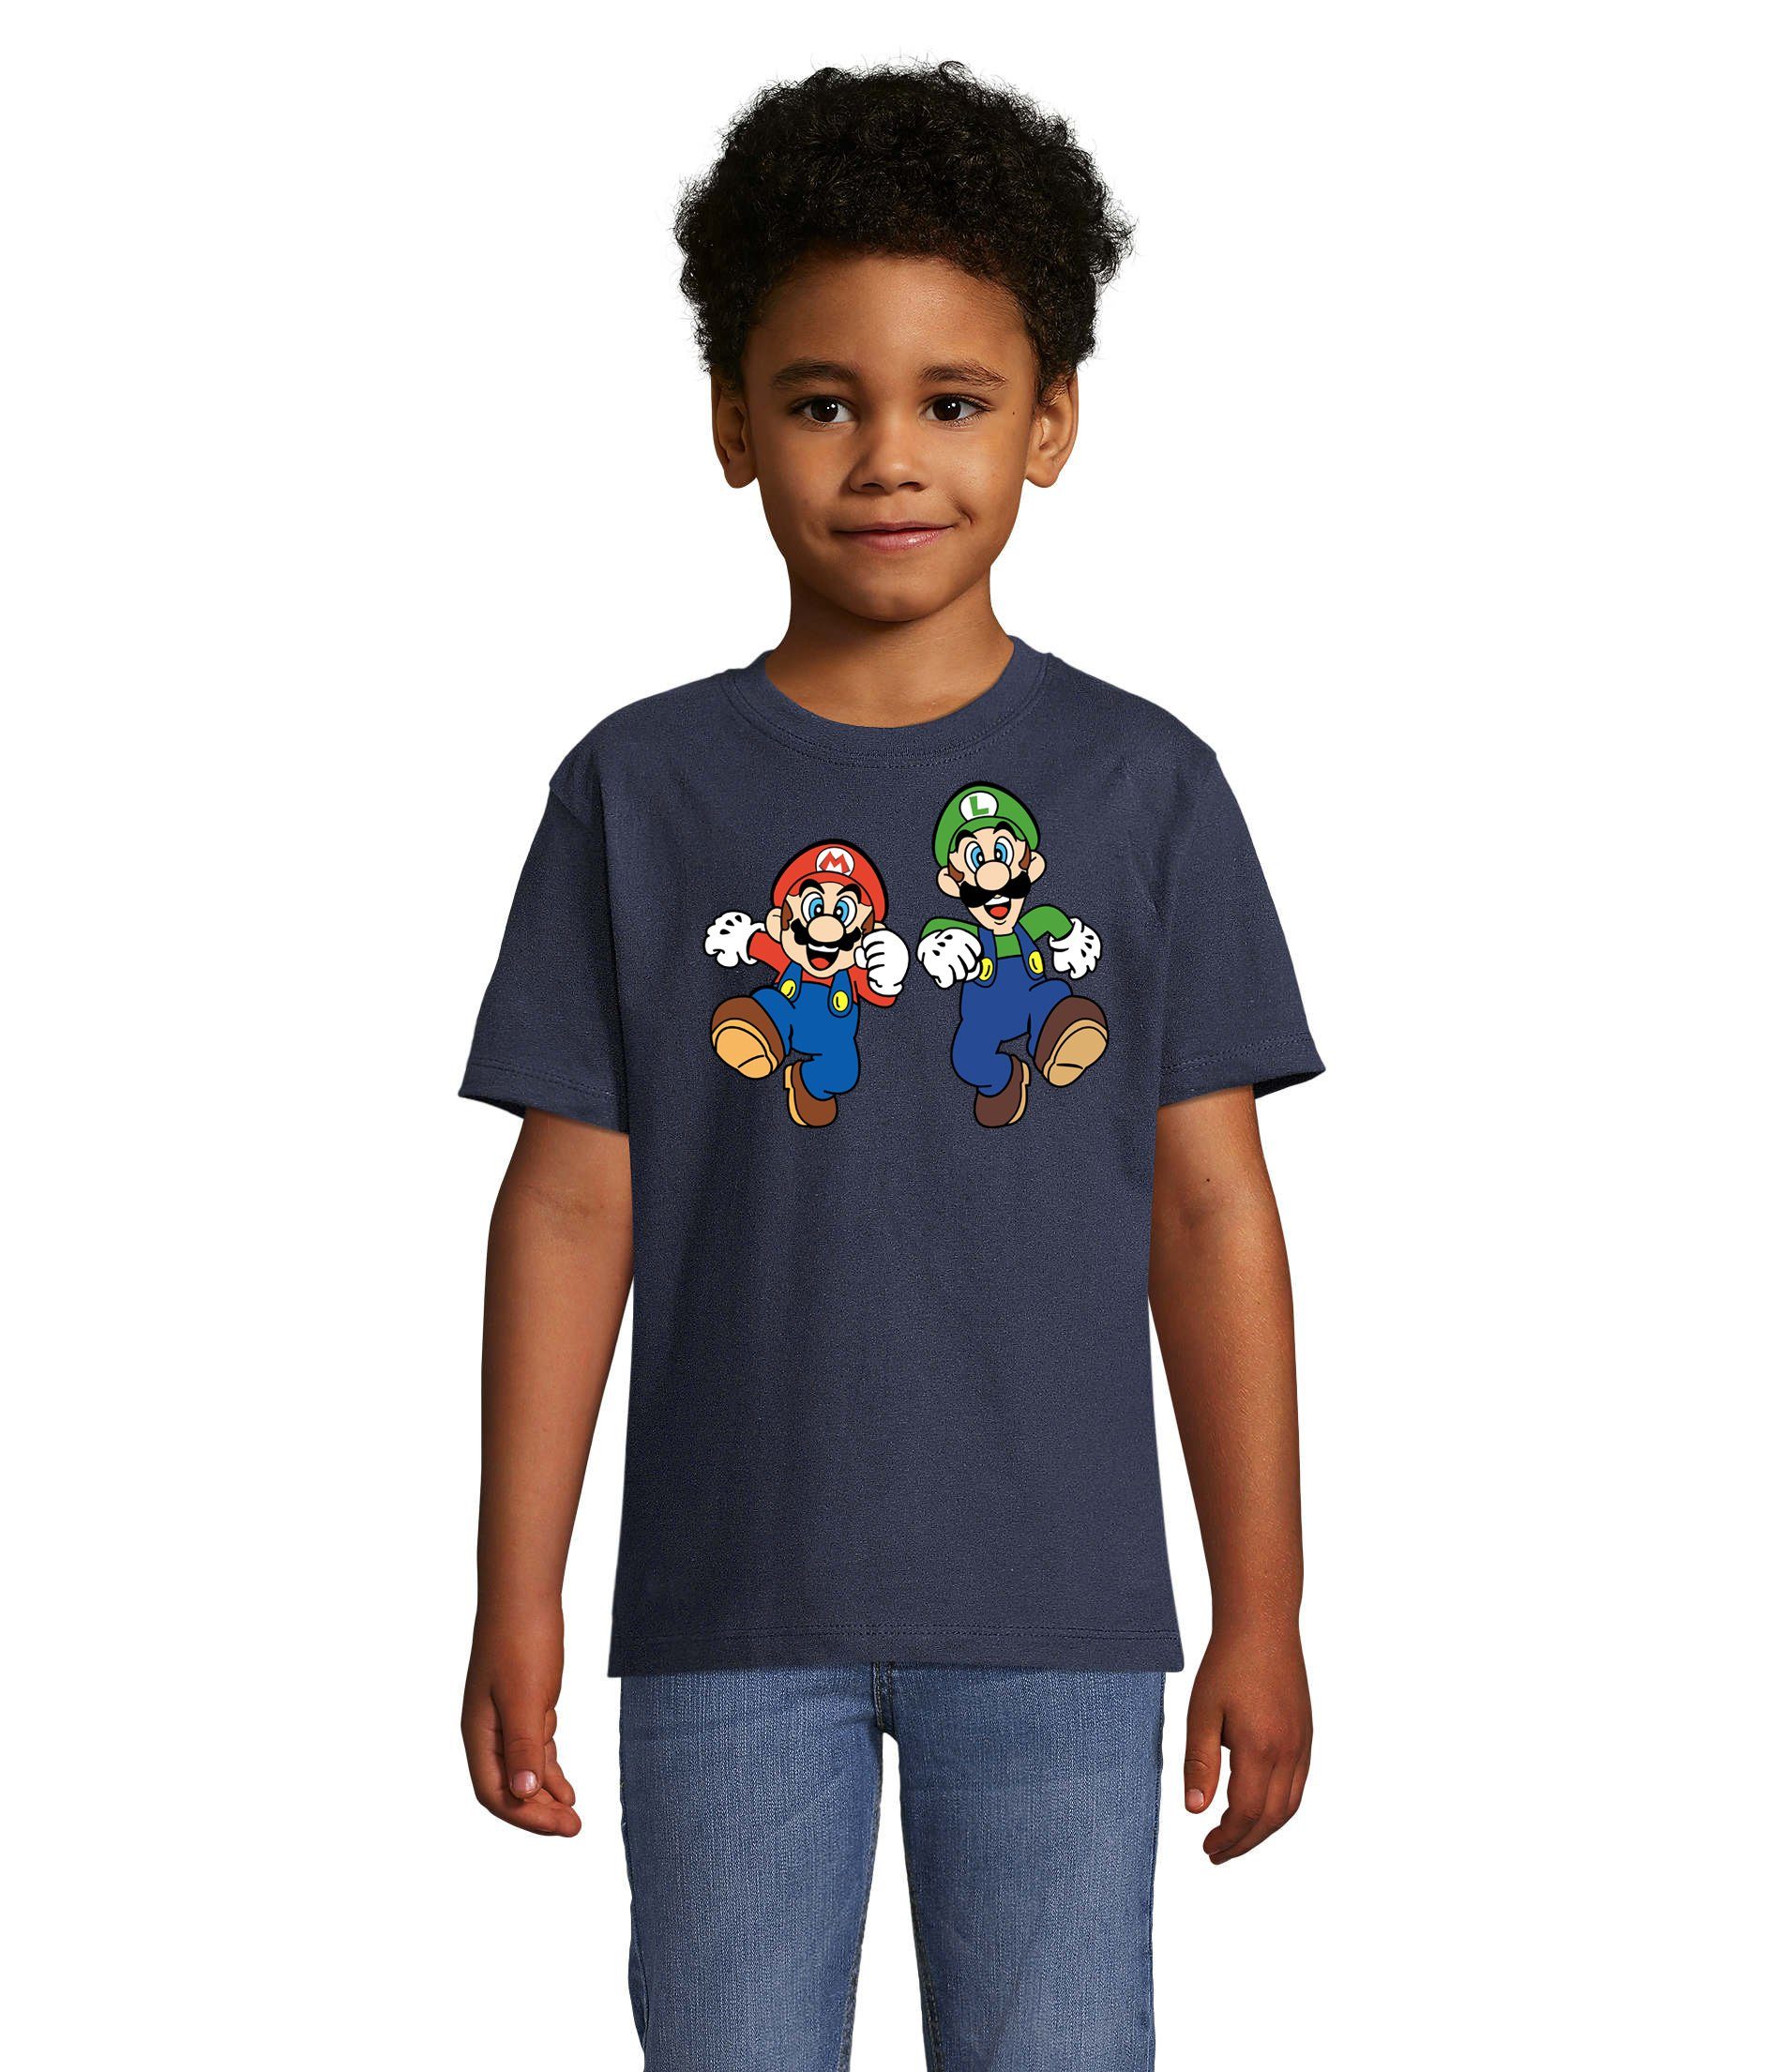 Blondie & Brownie T-Shirt Kinder Mario & Luigi Bowser Nintendo Yoshi Game Gamer Konsole Navyblau